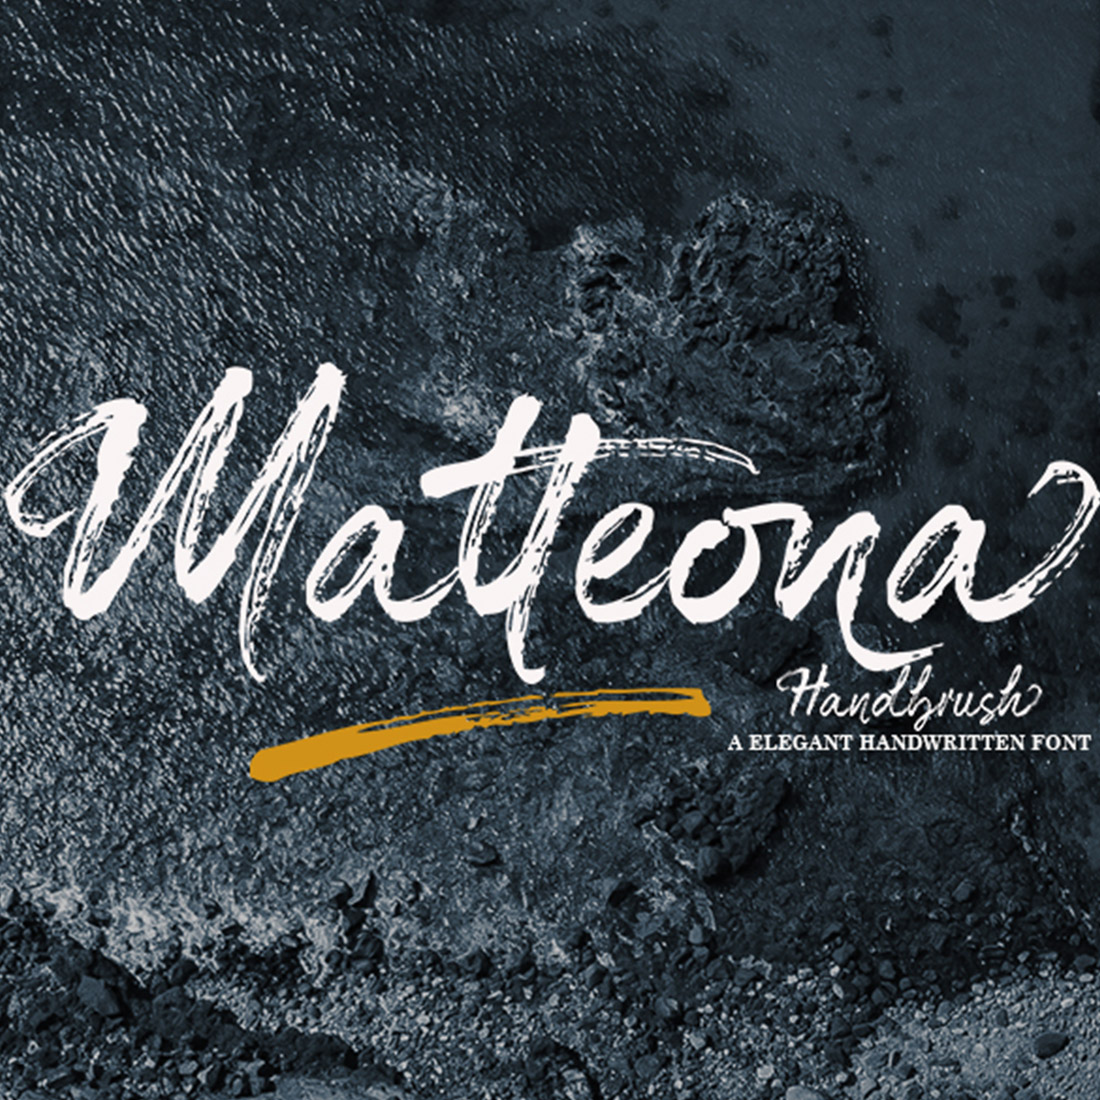 Matteona - Handbrush preview image.